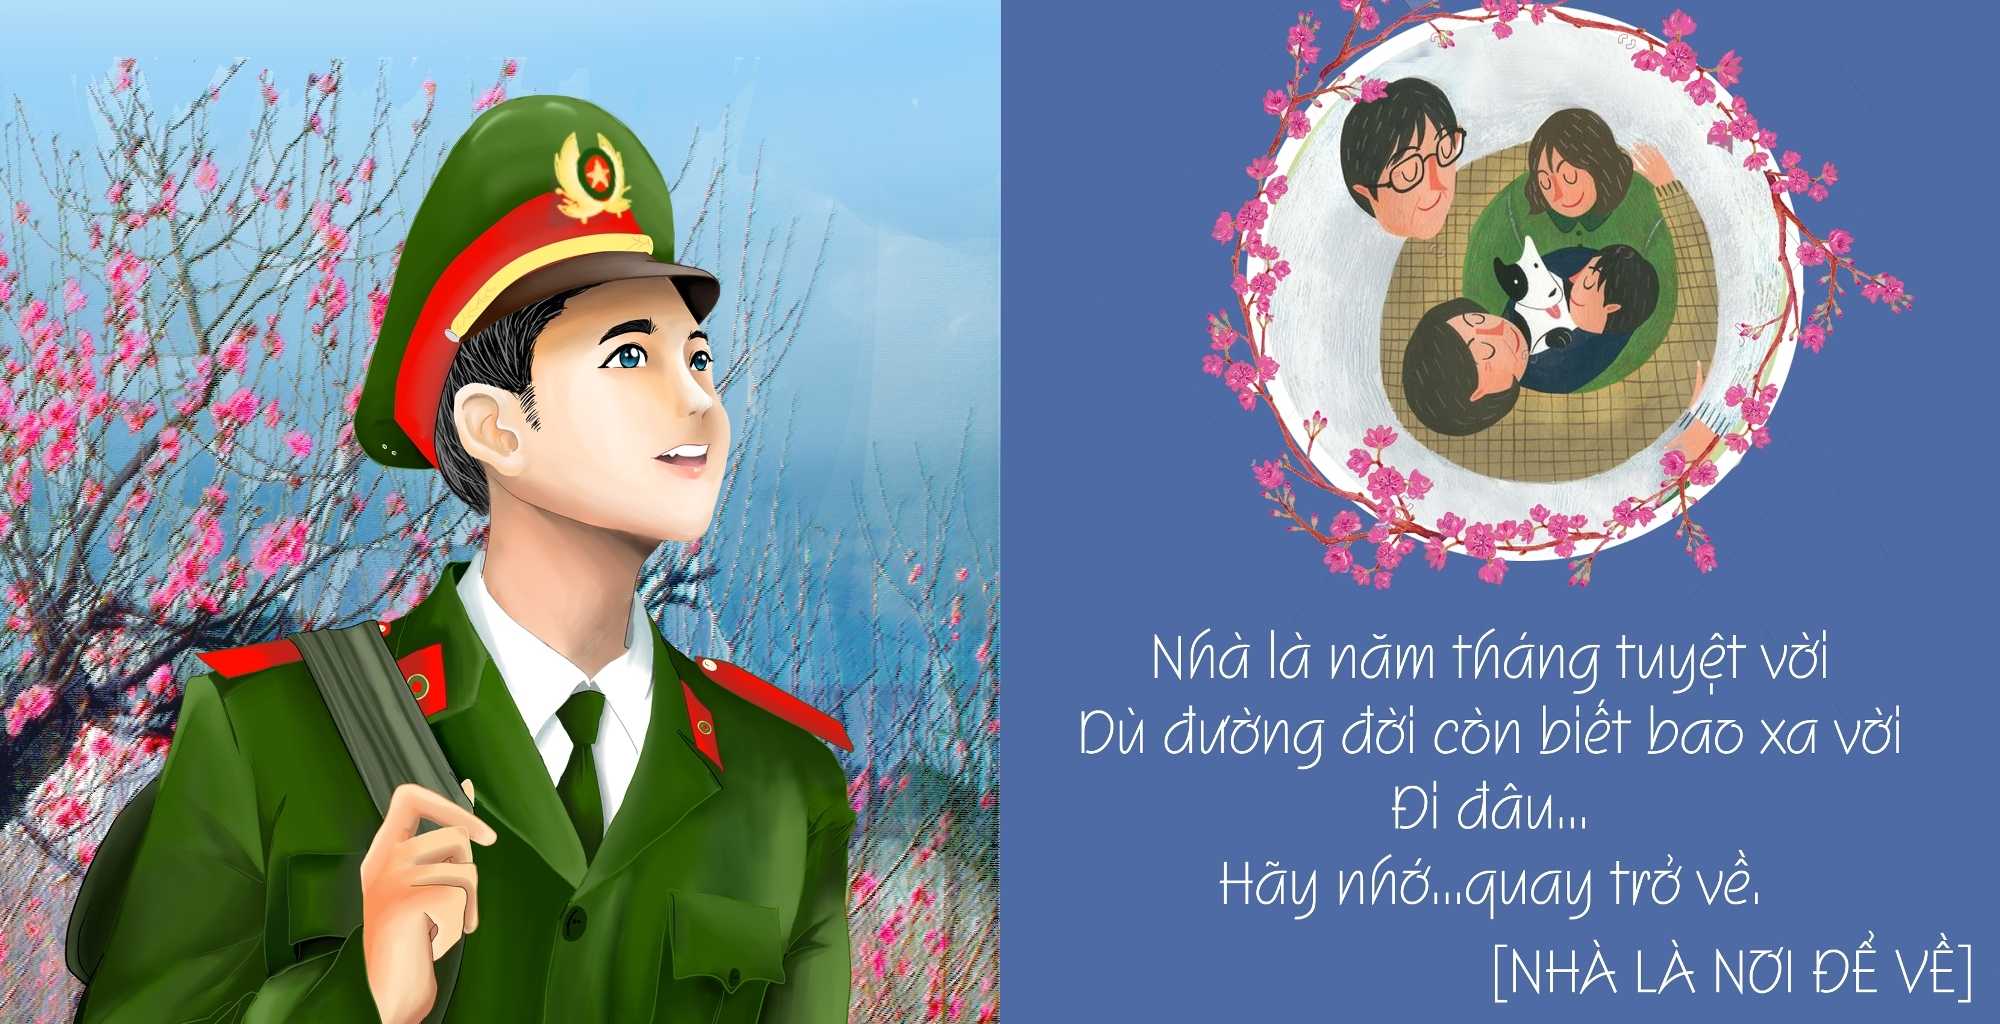 Ảnh Vẽ Về Quân Đội Nhân Dân Việt Nam - Nhật Ký Bão Lửa